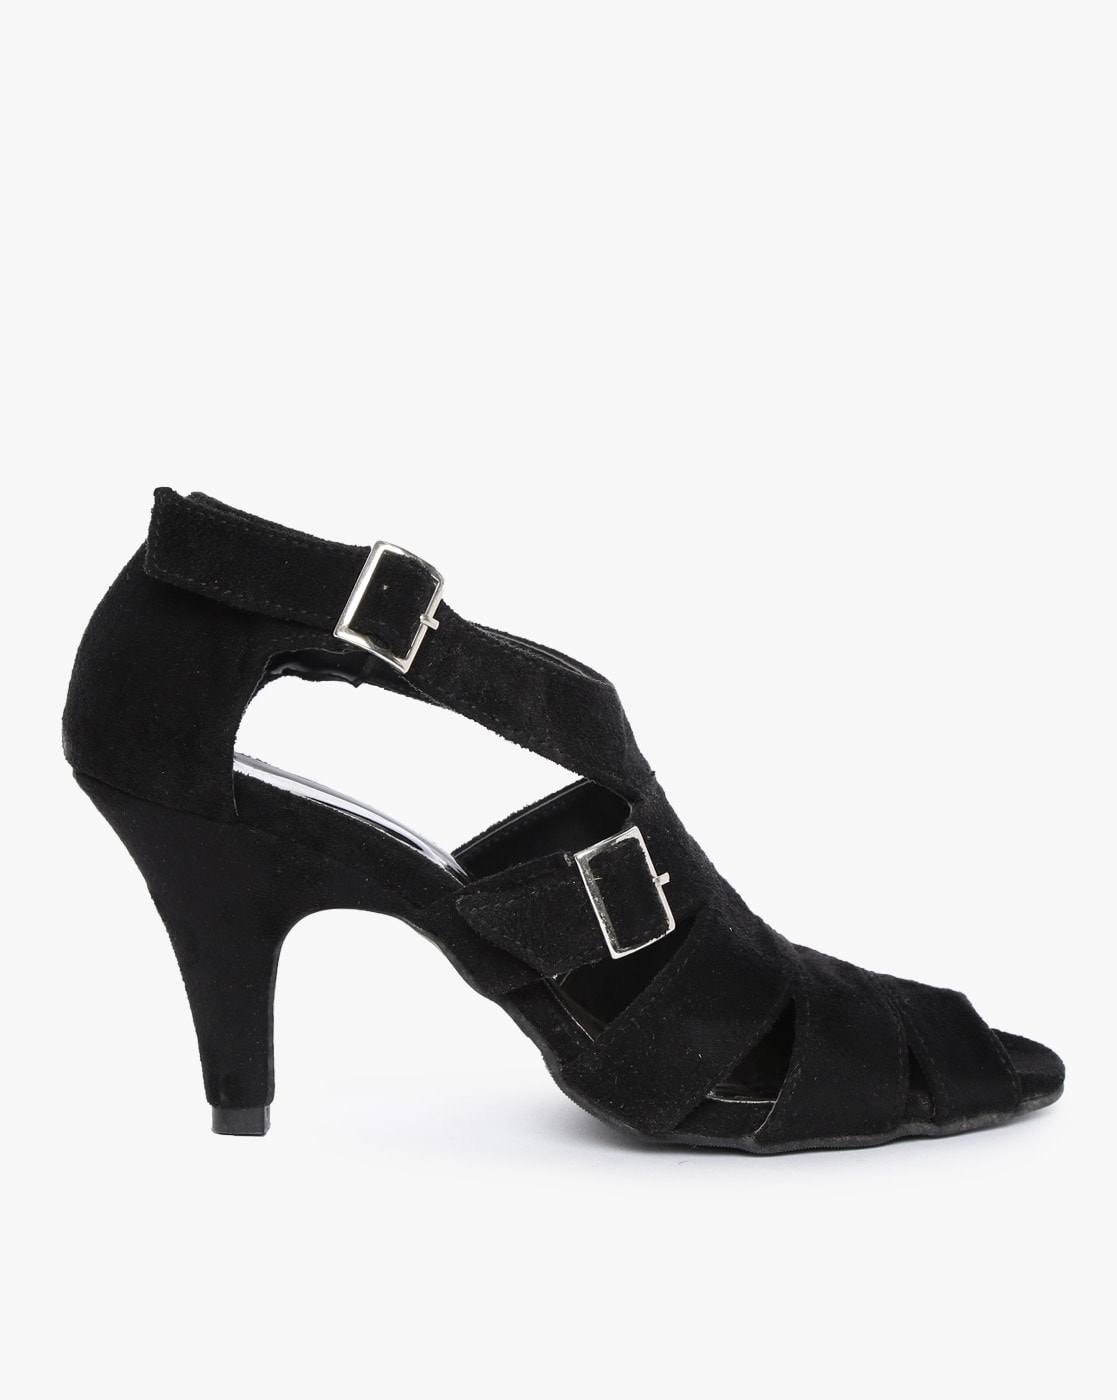 black strappy kitten heels